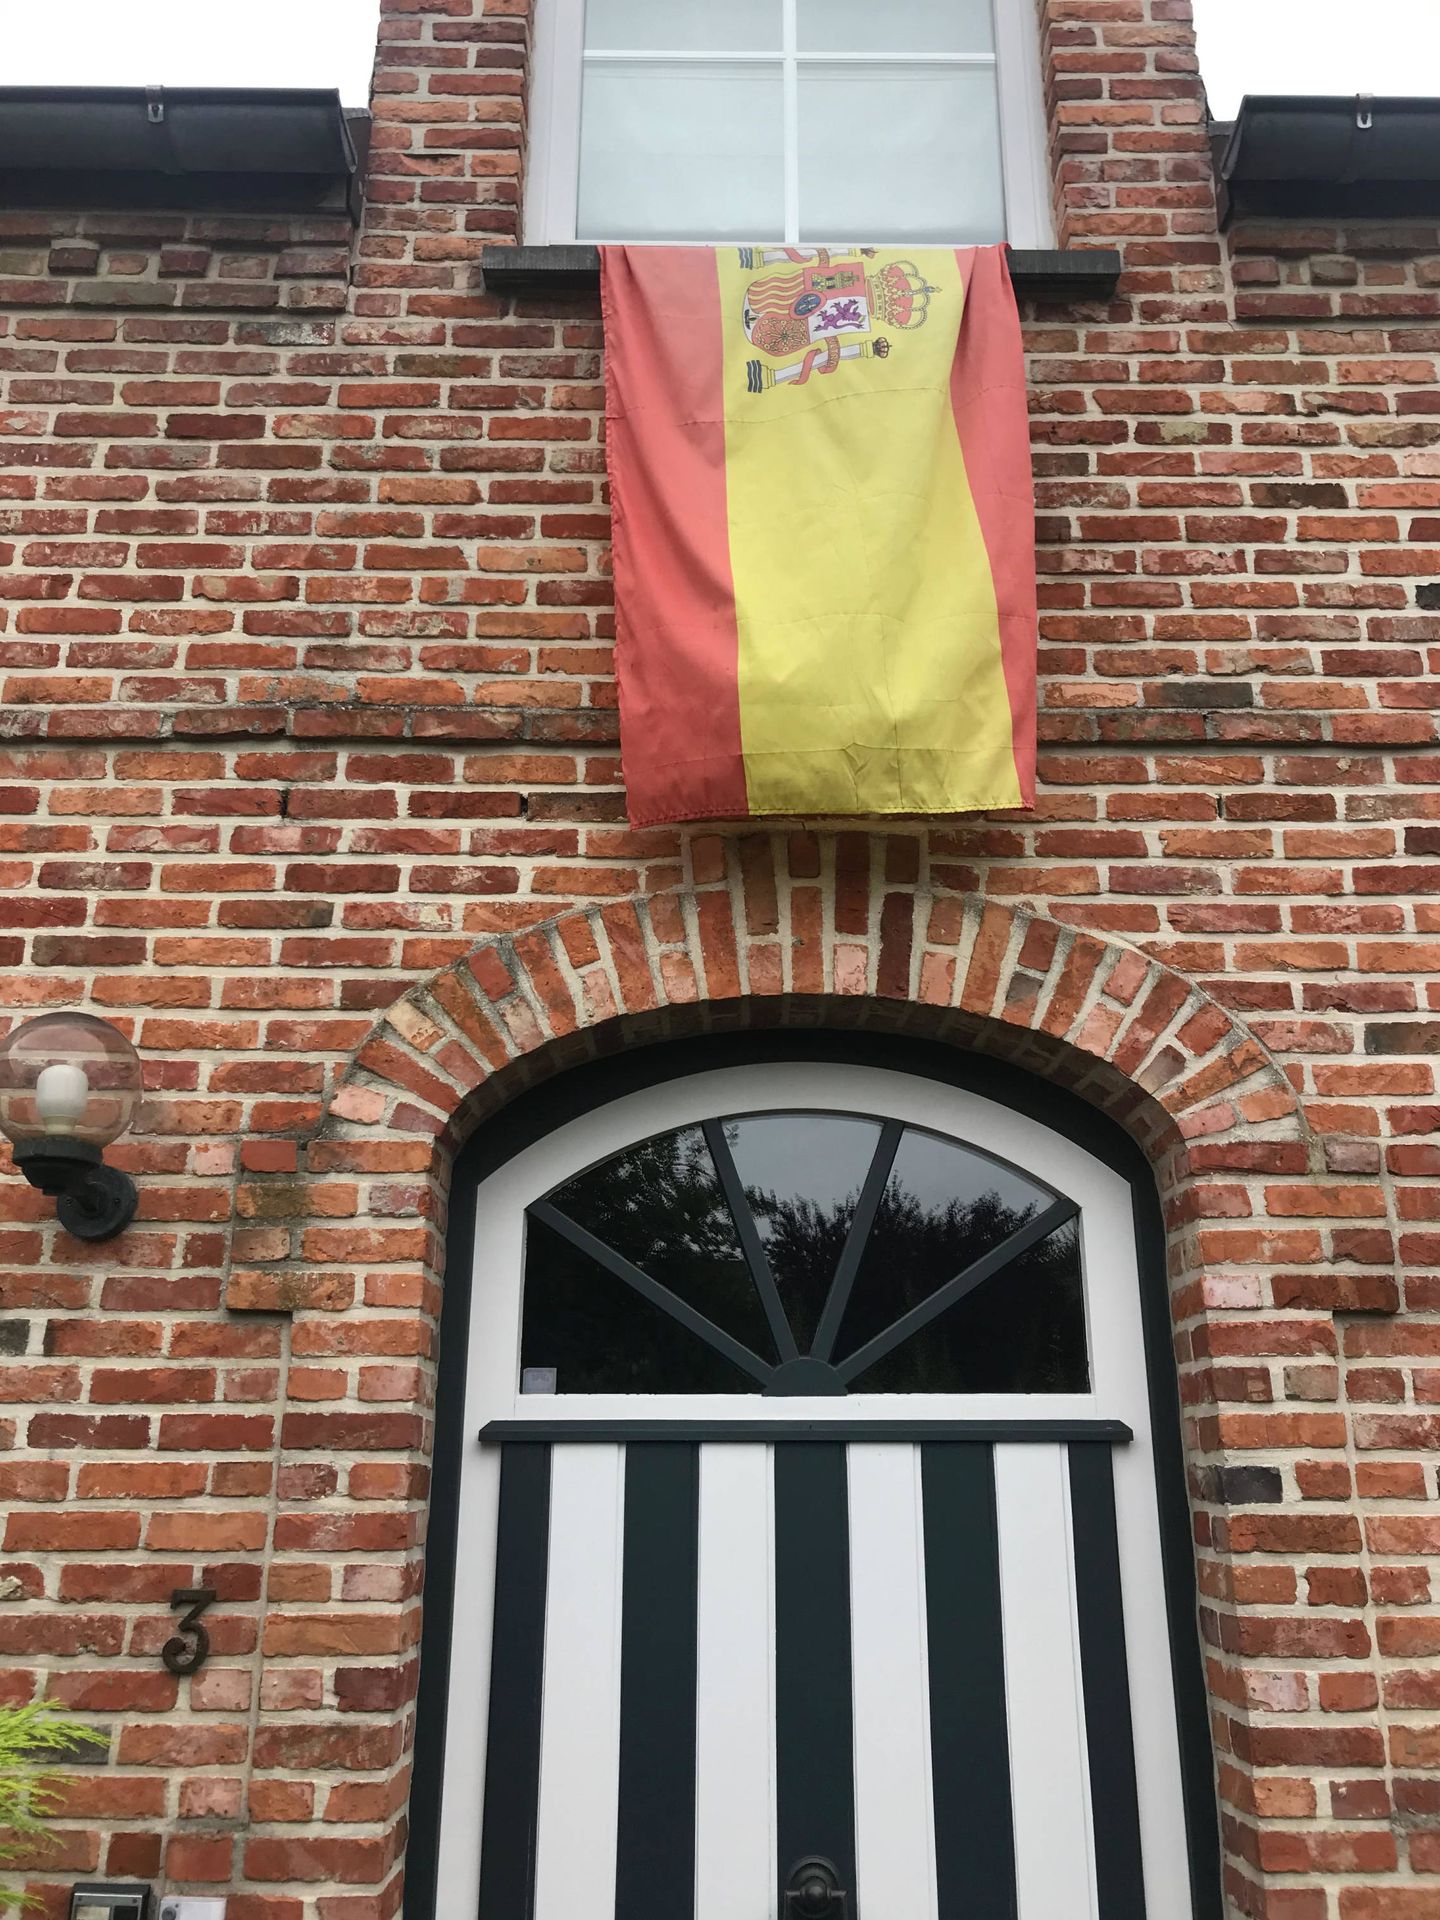 La bandera de España del misterioso vecino... que es italiano. (C. B.)